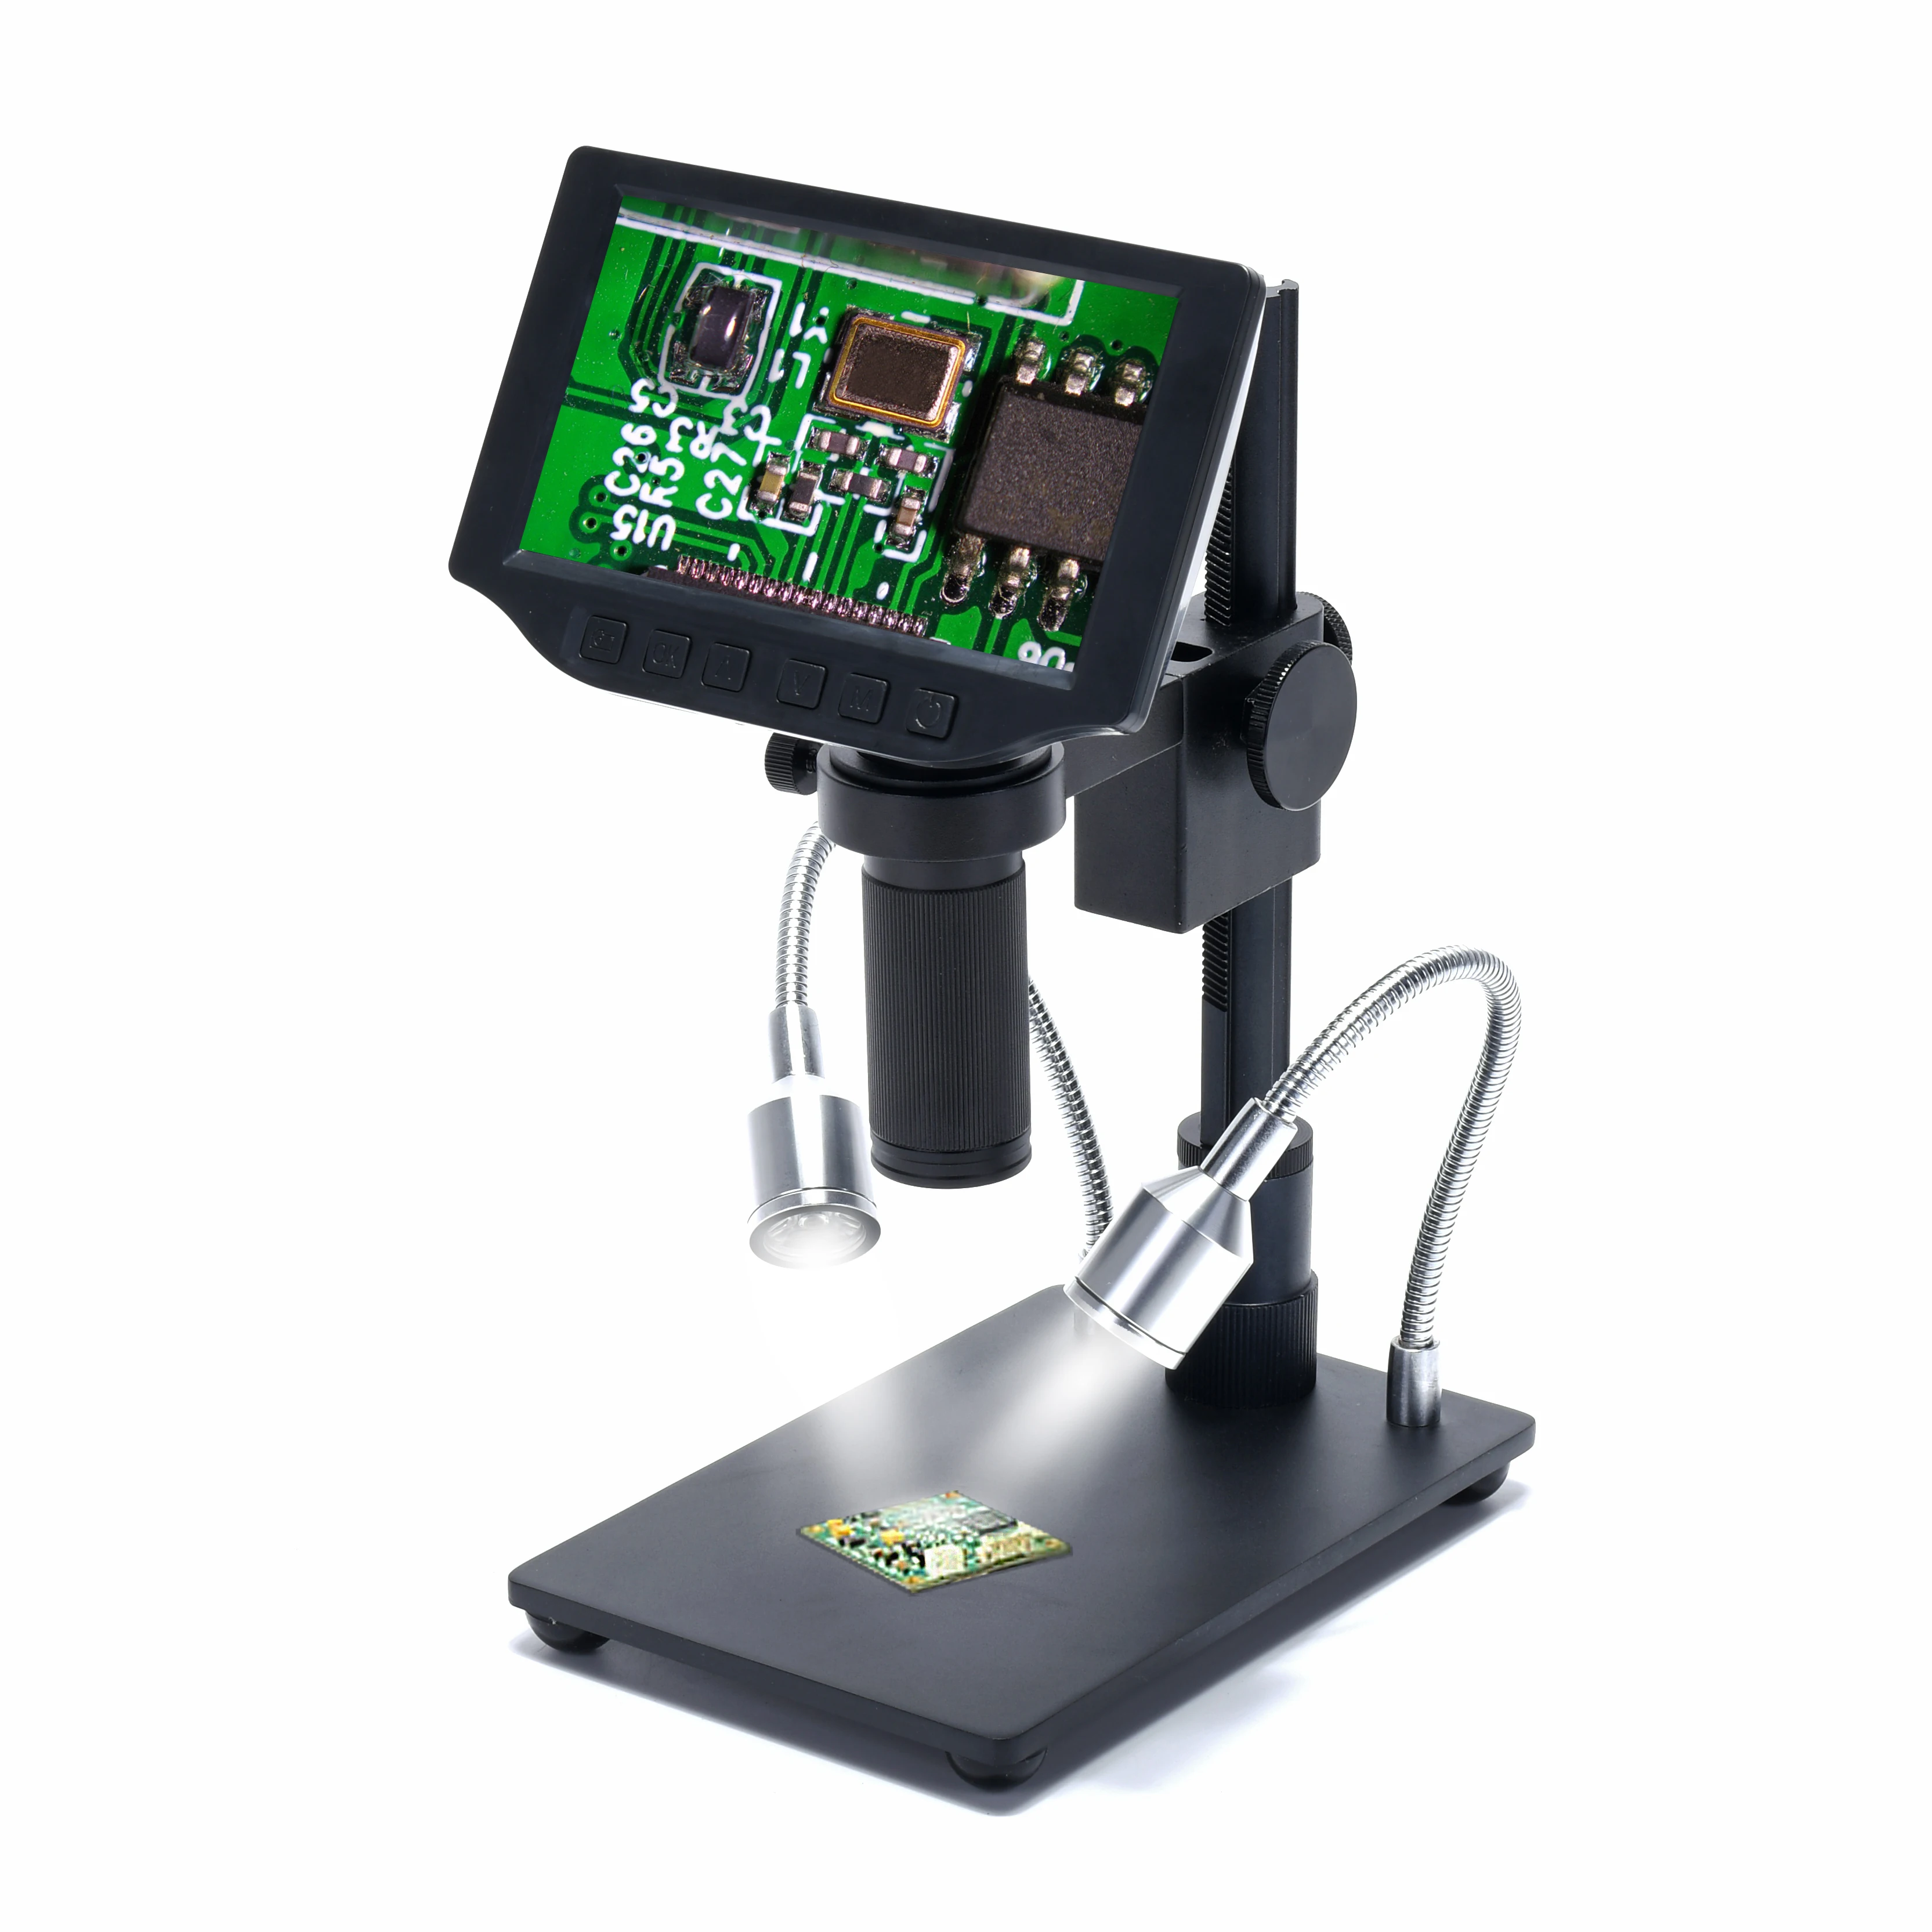 

Микроскоп с камерой 16 МП, 5-дюймовый экран, HDMI, USB-выход, с креплением 150X C, держатель для объектива микроскопа